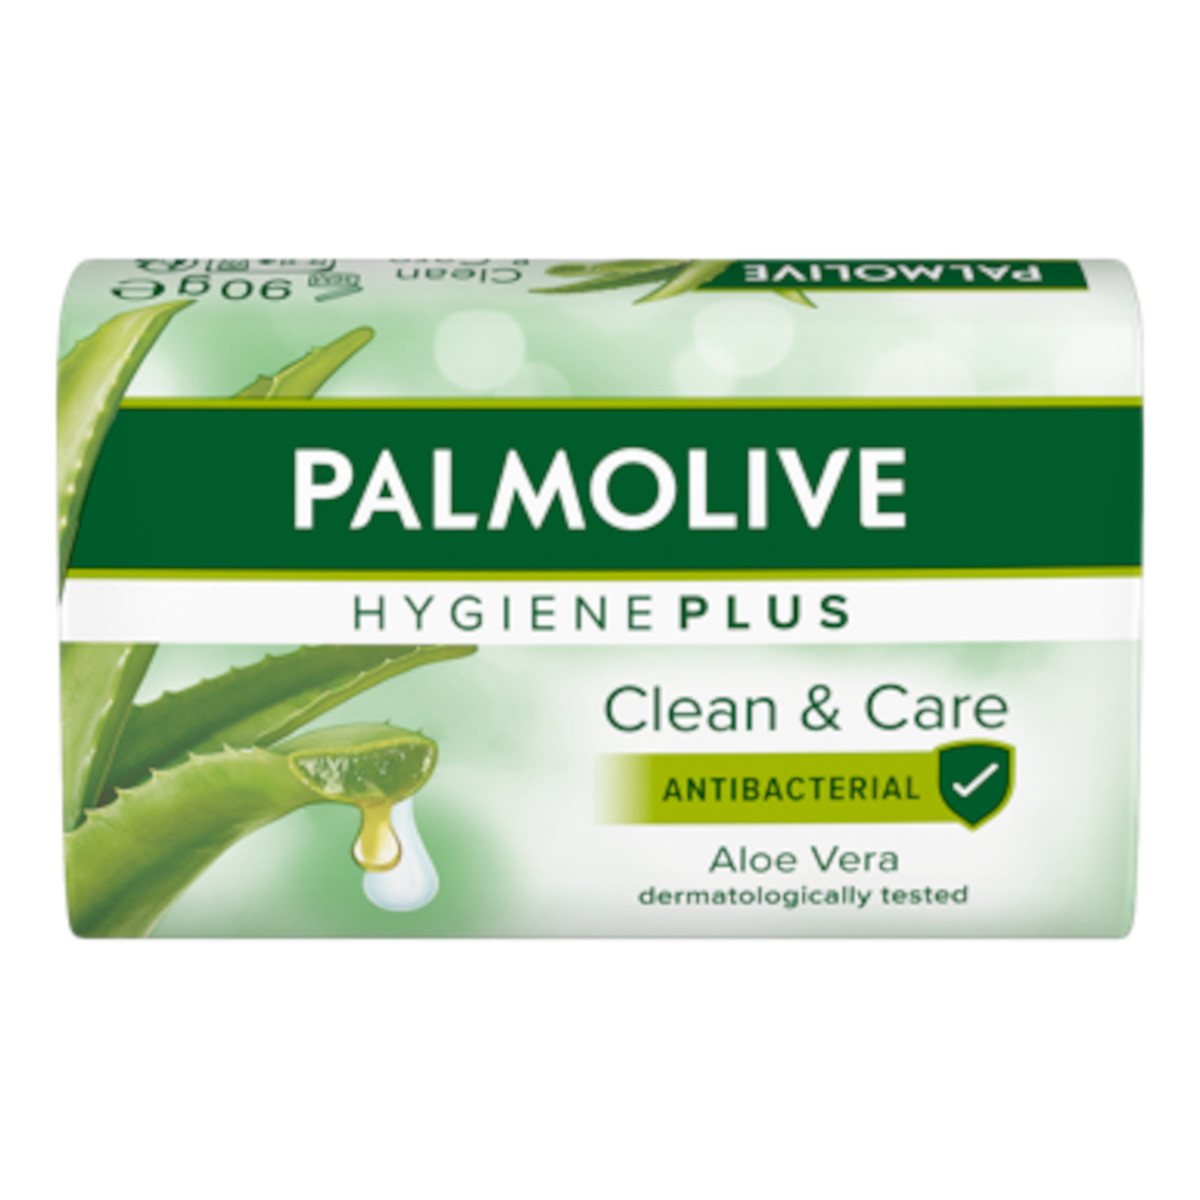 Palmolive Hygiene Plus Mydło antybakteryjne w kostce - Aloe Vera 90g